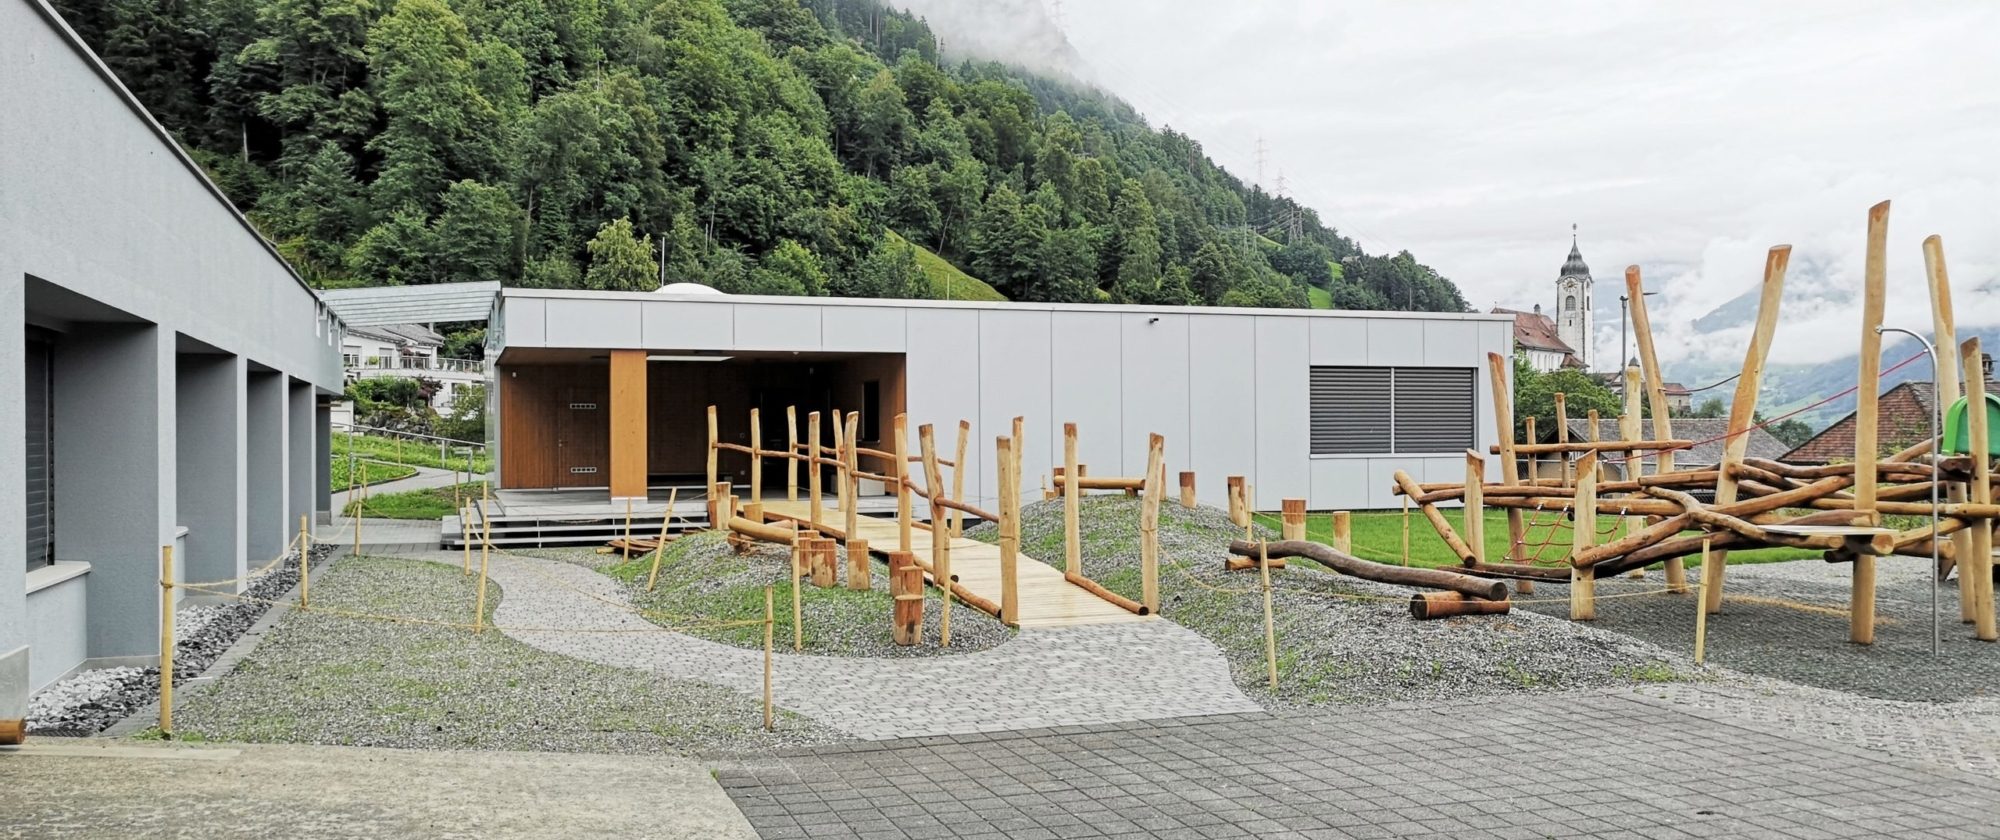 Aussenansicht des Neubaus Kindergarten Gehren mit Spielplatz im Vordergrund